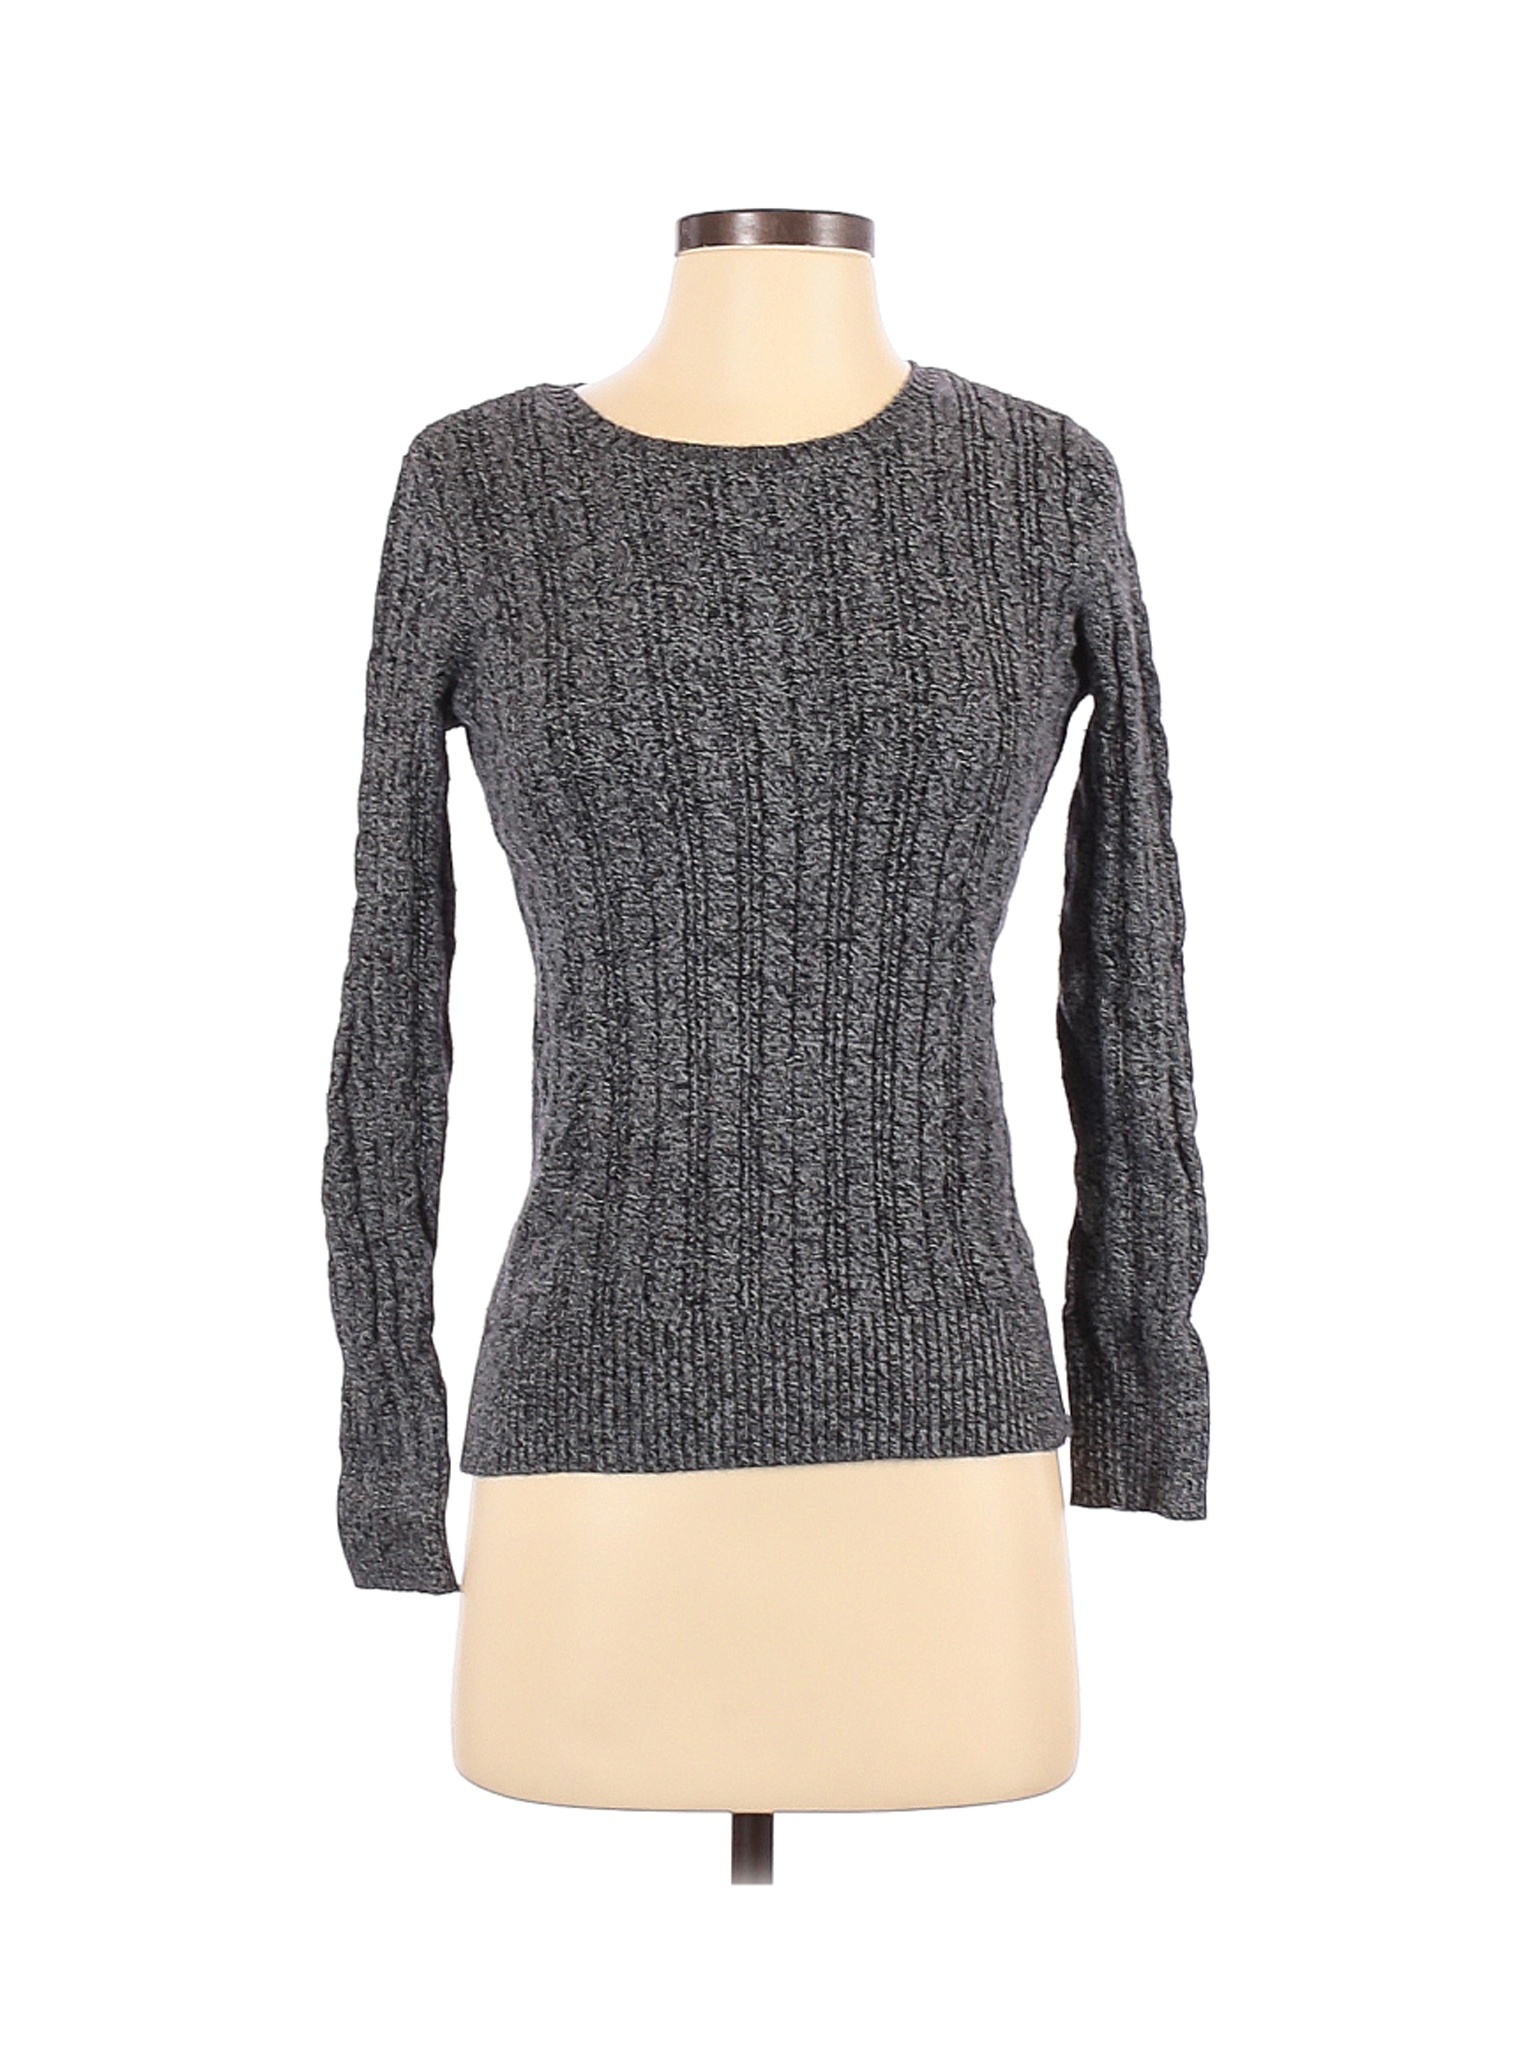 St. John's Bay Women Gray Pullover Sweater S | eBay